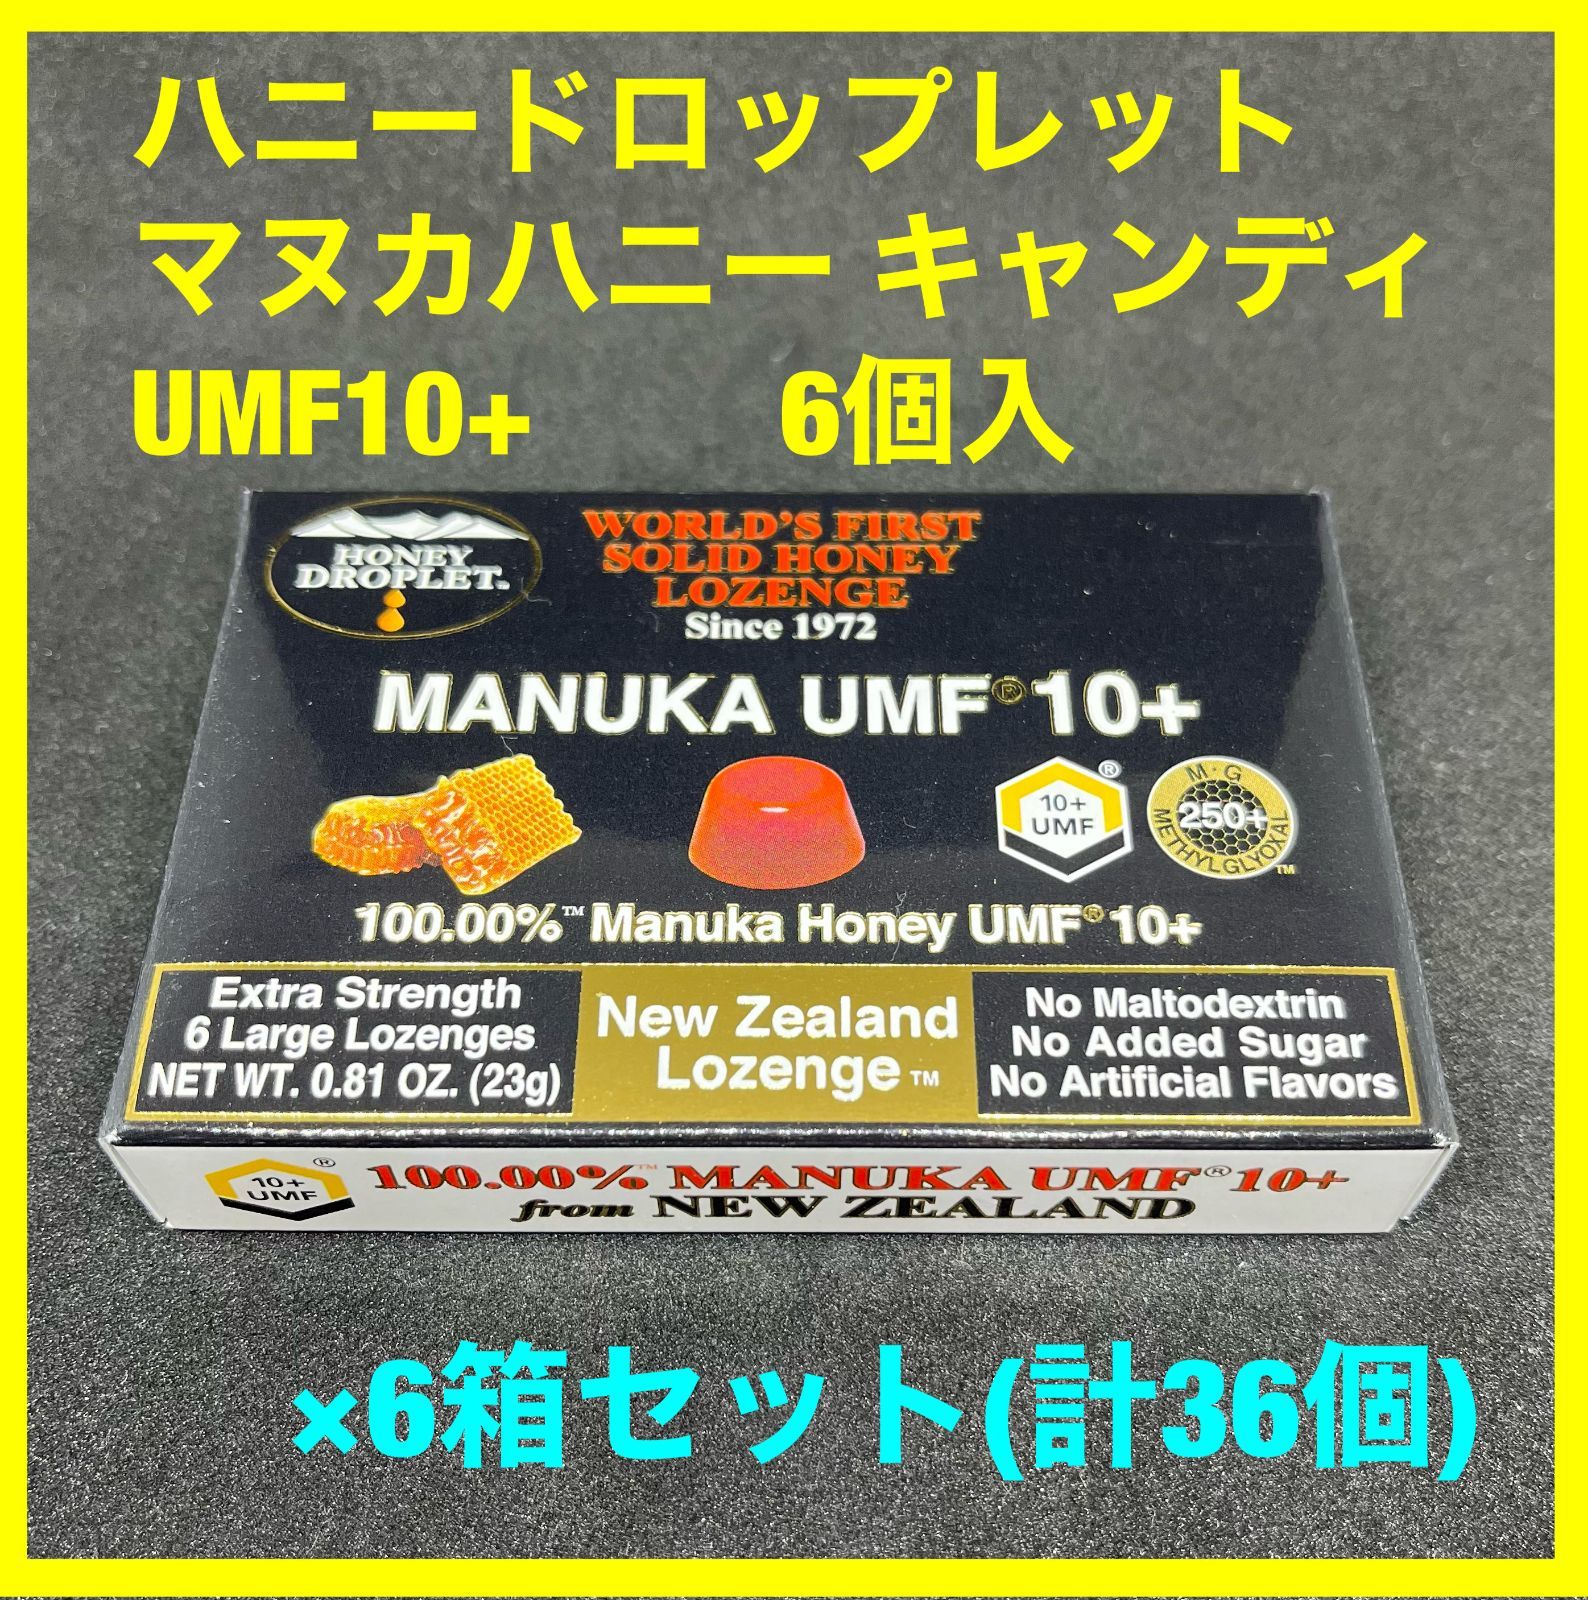 低価格 ハニードロップレット マヌカハニー UMF10+ 6個入 ×6箱セット